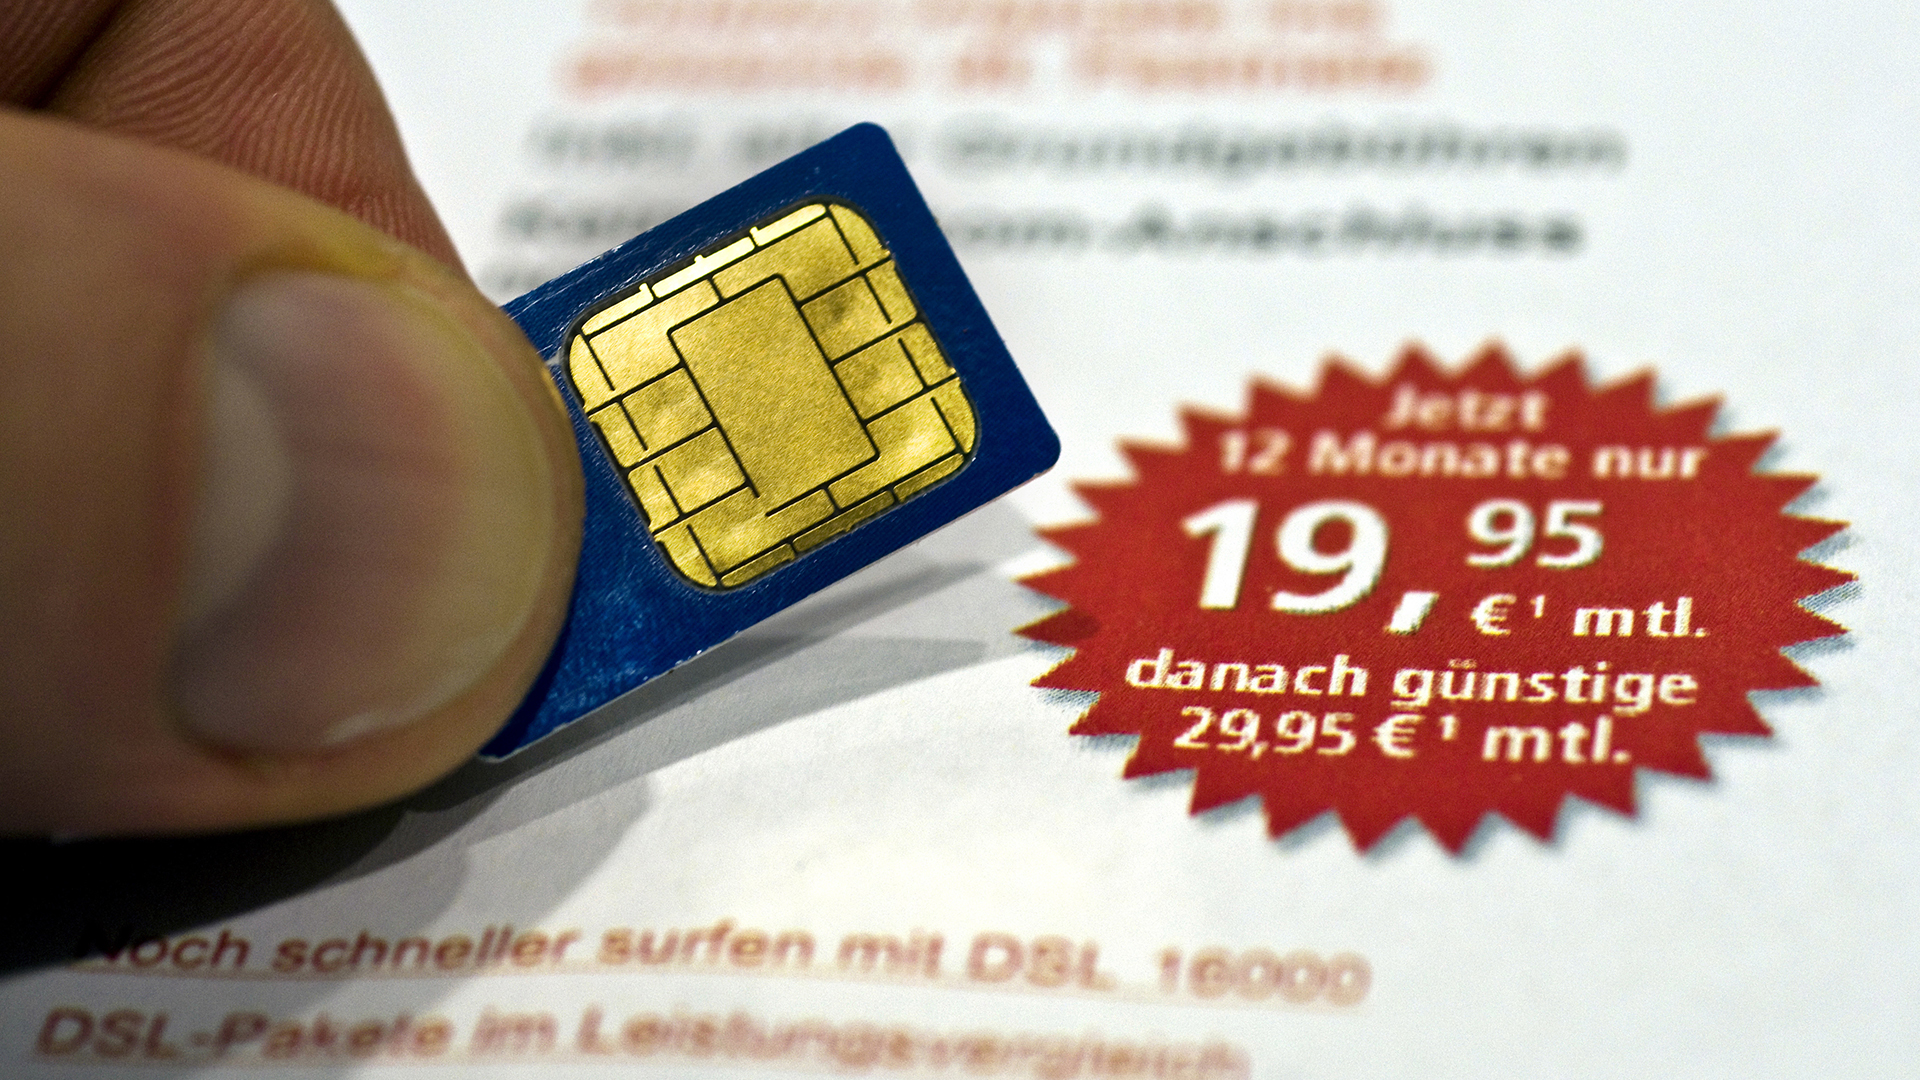 SIM-Karte vor Angebotsflyer | picture alliance / dpa Themendie